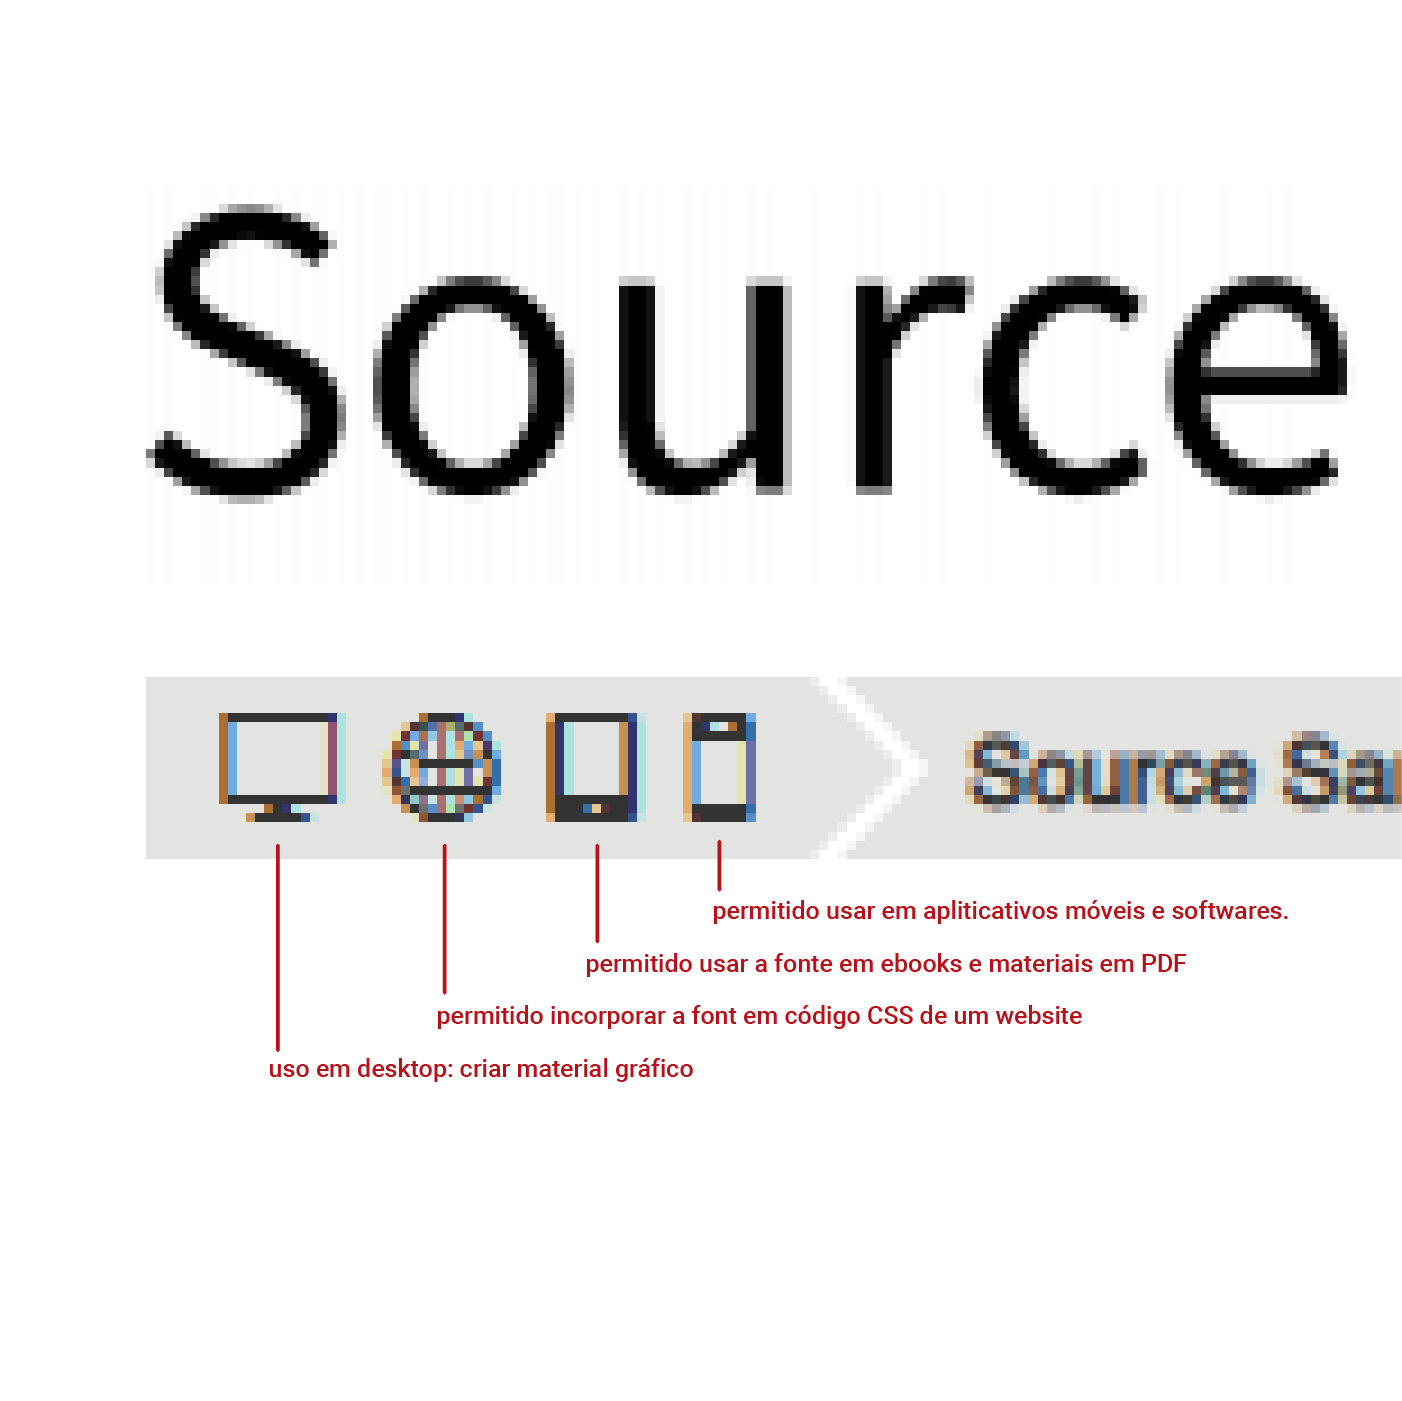 Sites para baixar fontes. Print screen do site Font Squirrel, mostrando indicação de liberação de uso da fonte.